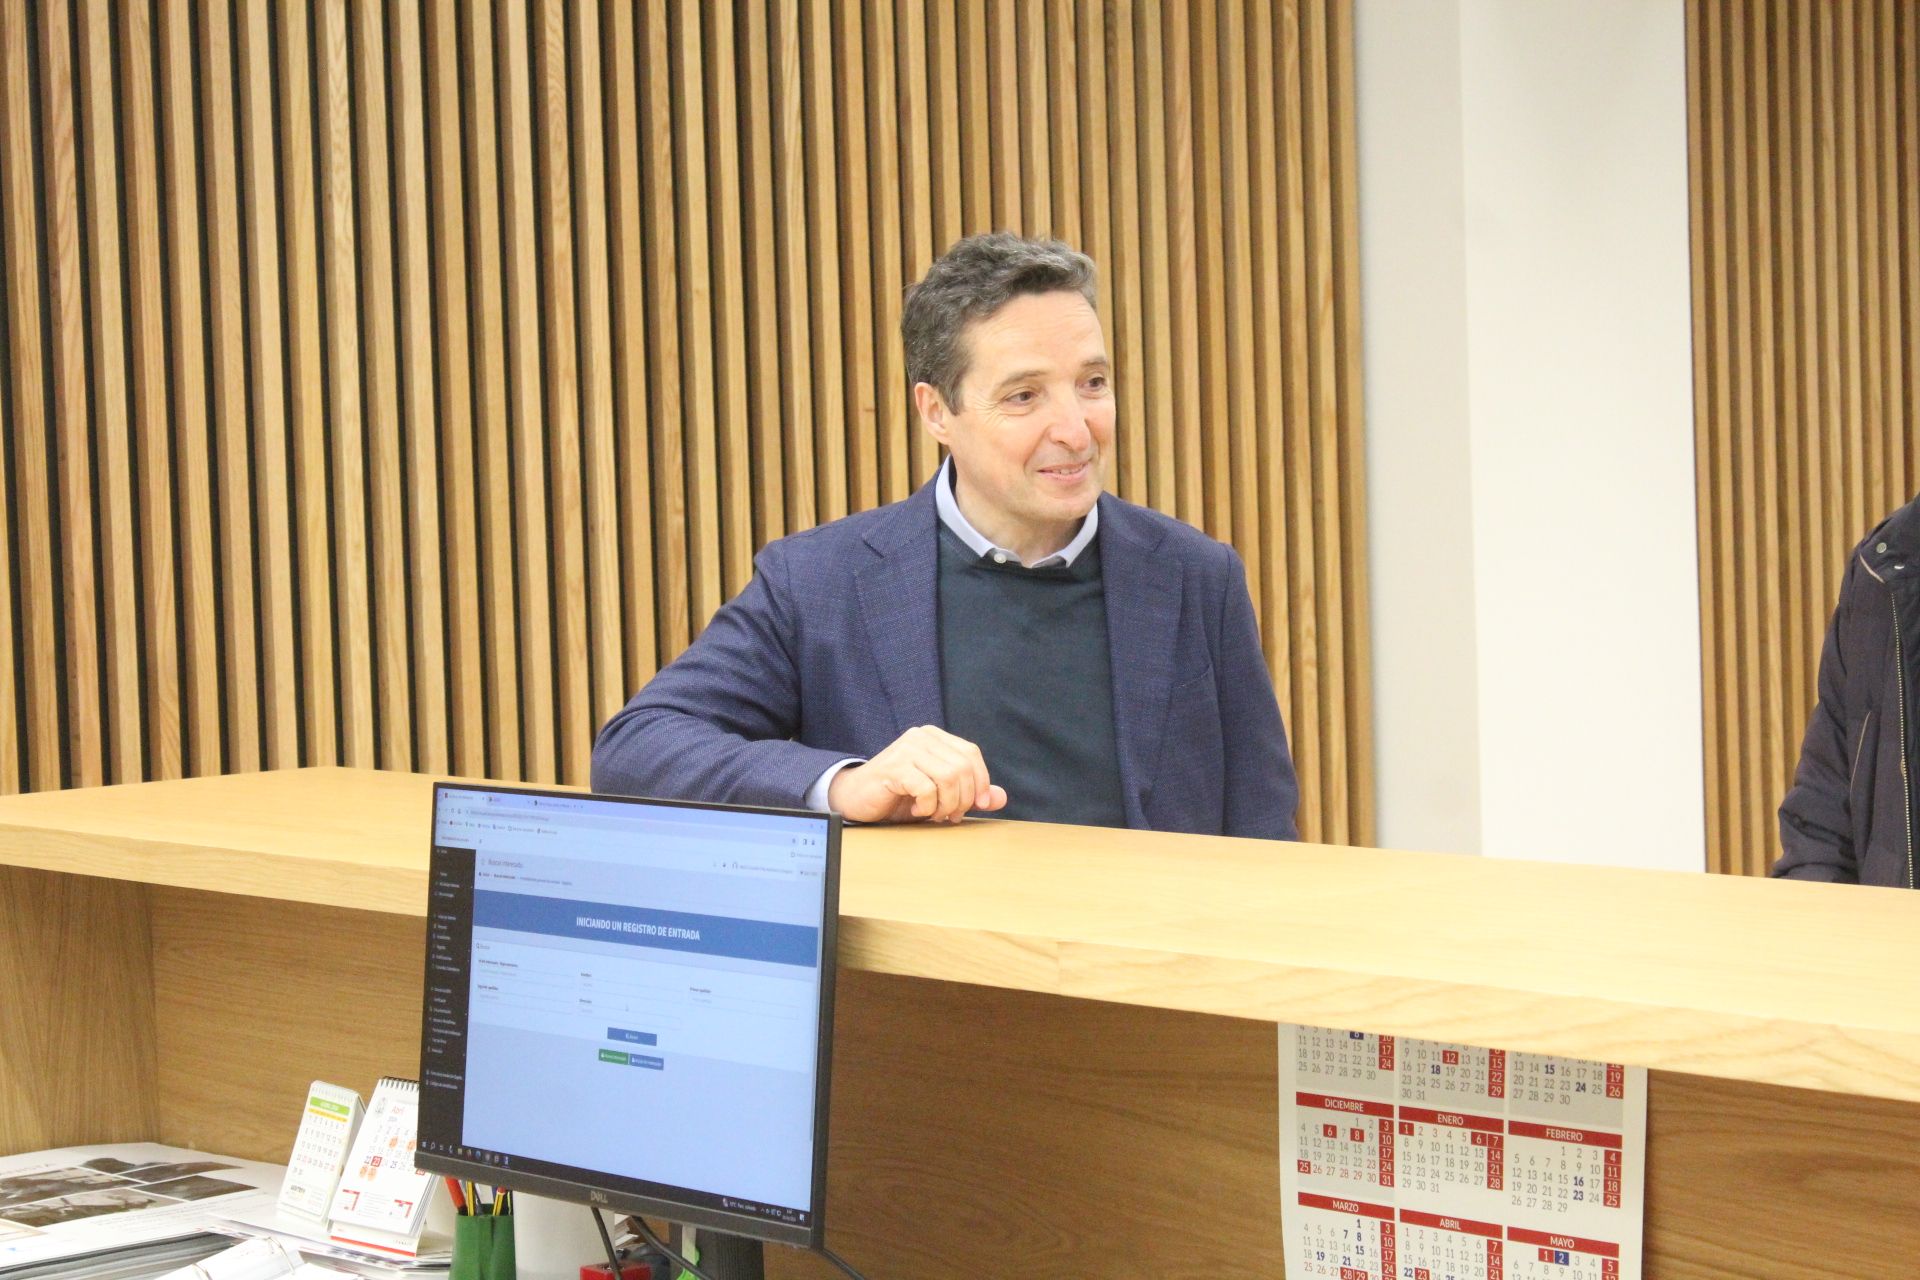  Juan Manuel Corchado anuncia el registro de su candidatura.